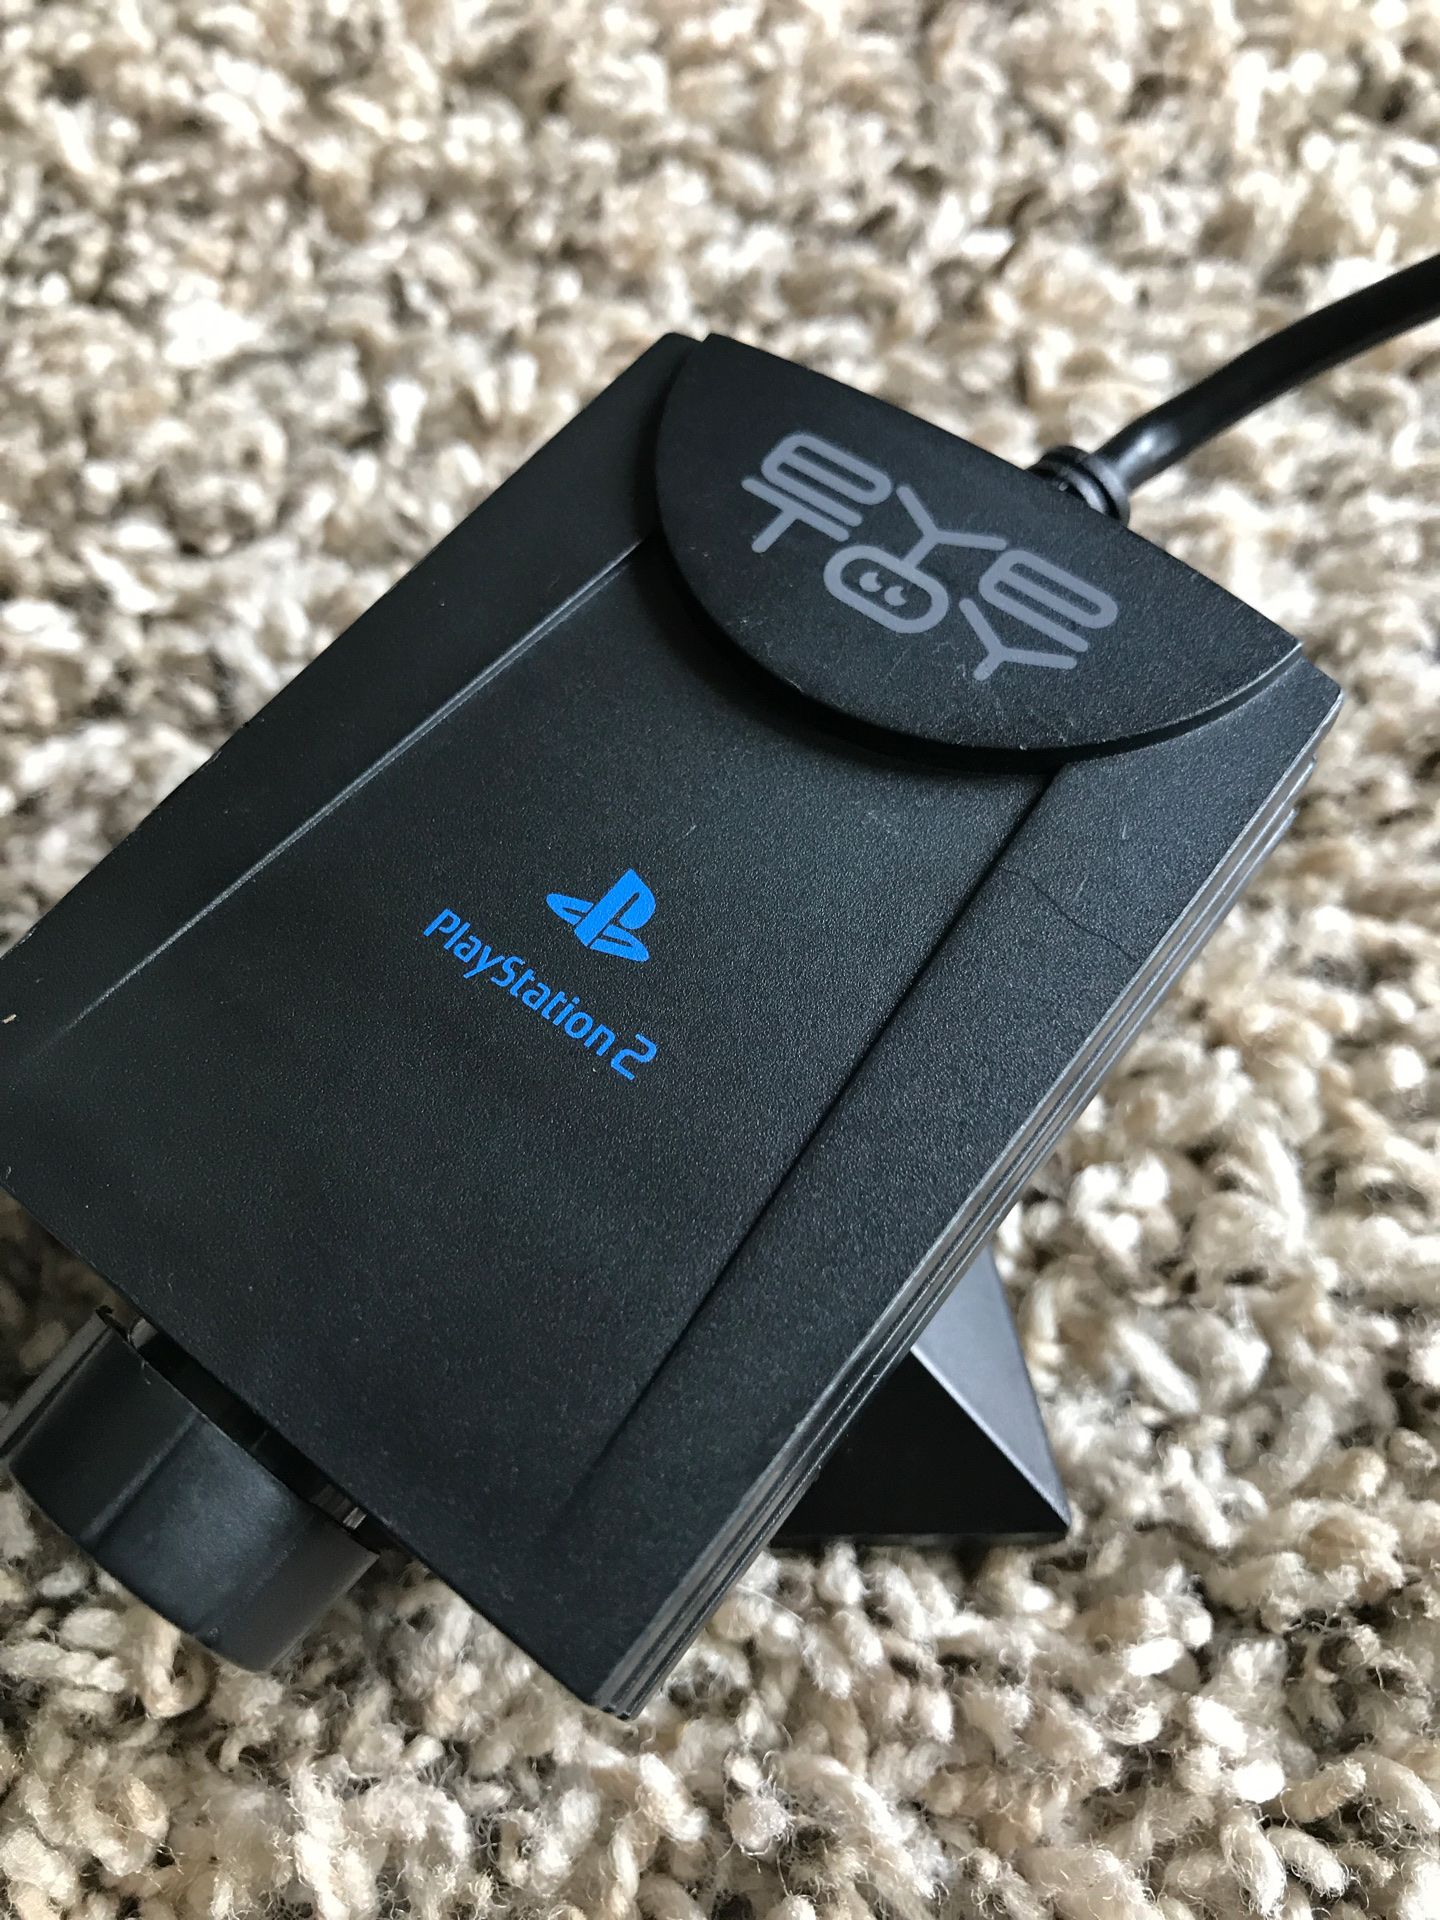 PlayStation 2 eyetoy USB camera